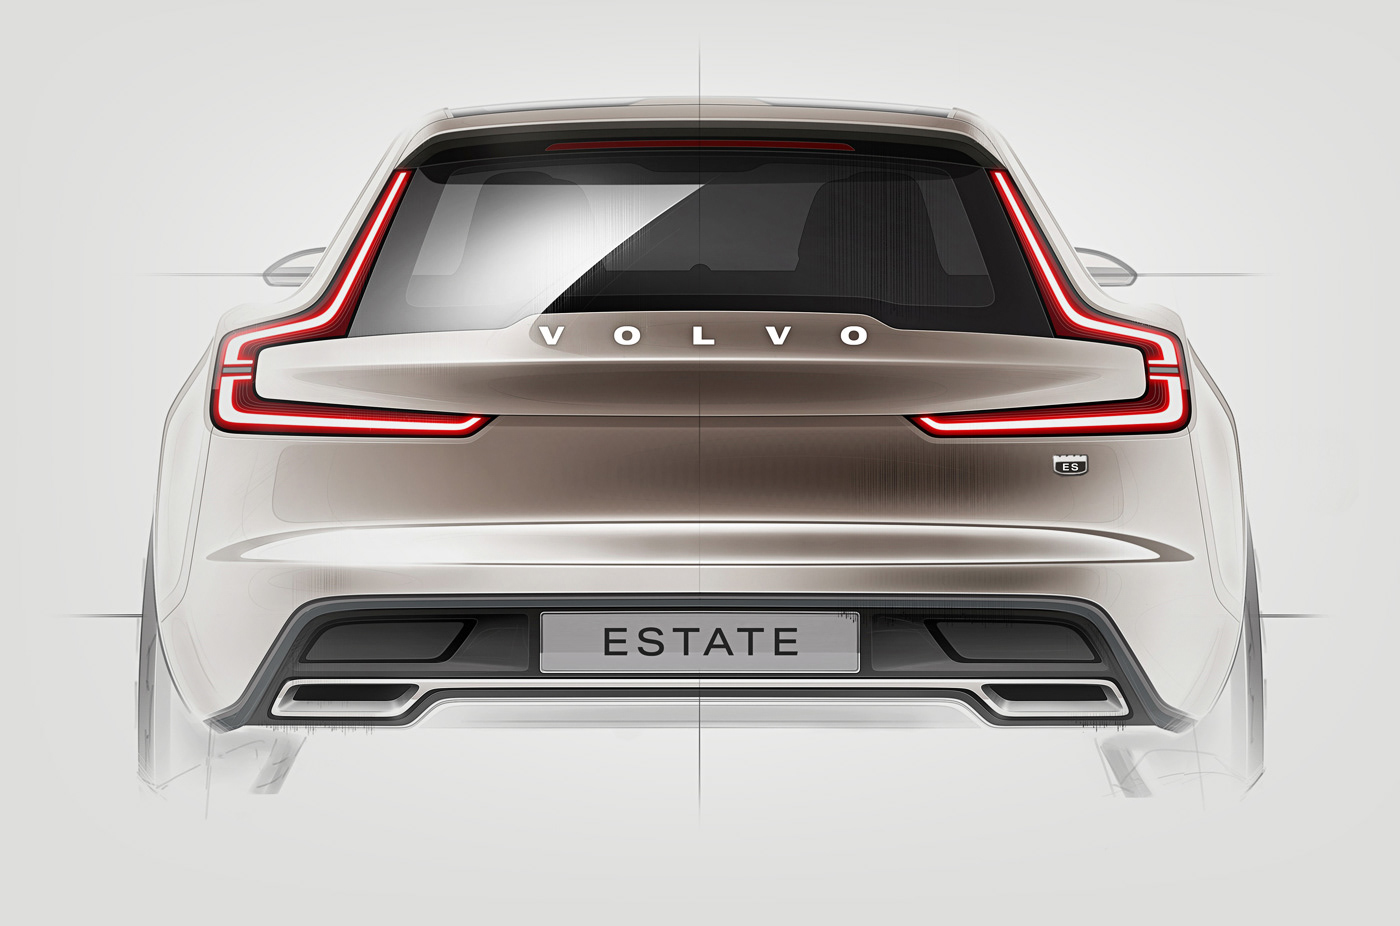 Advertising  automotive   brand identity branding  identity motion graphics  typography   Volvo